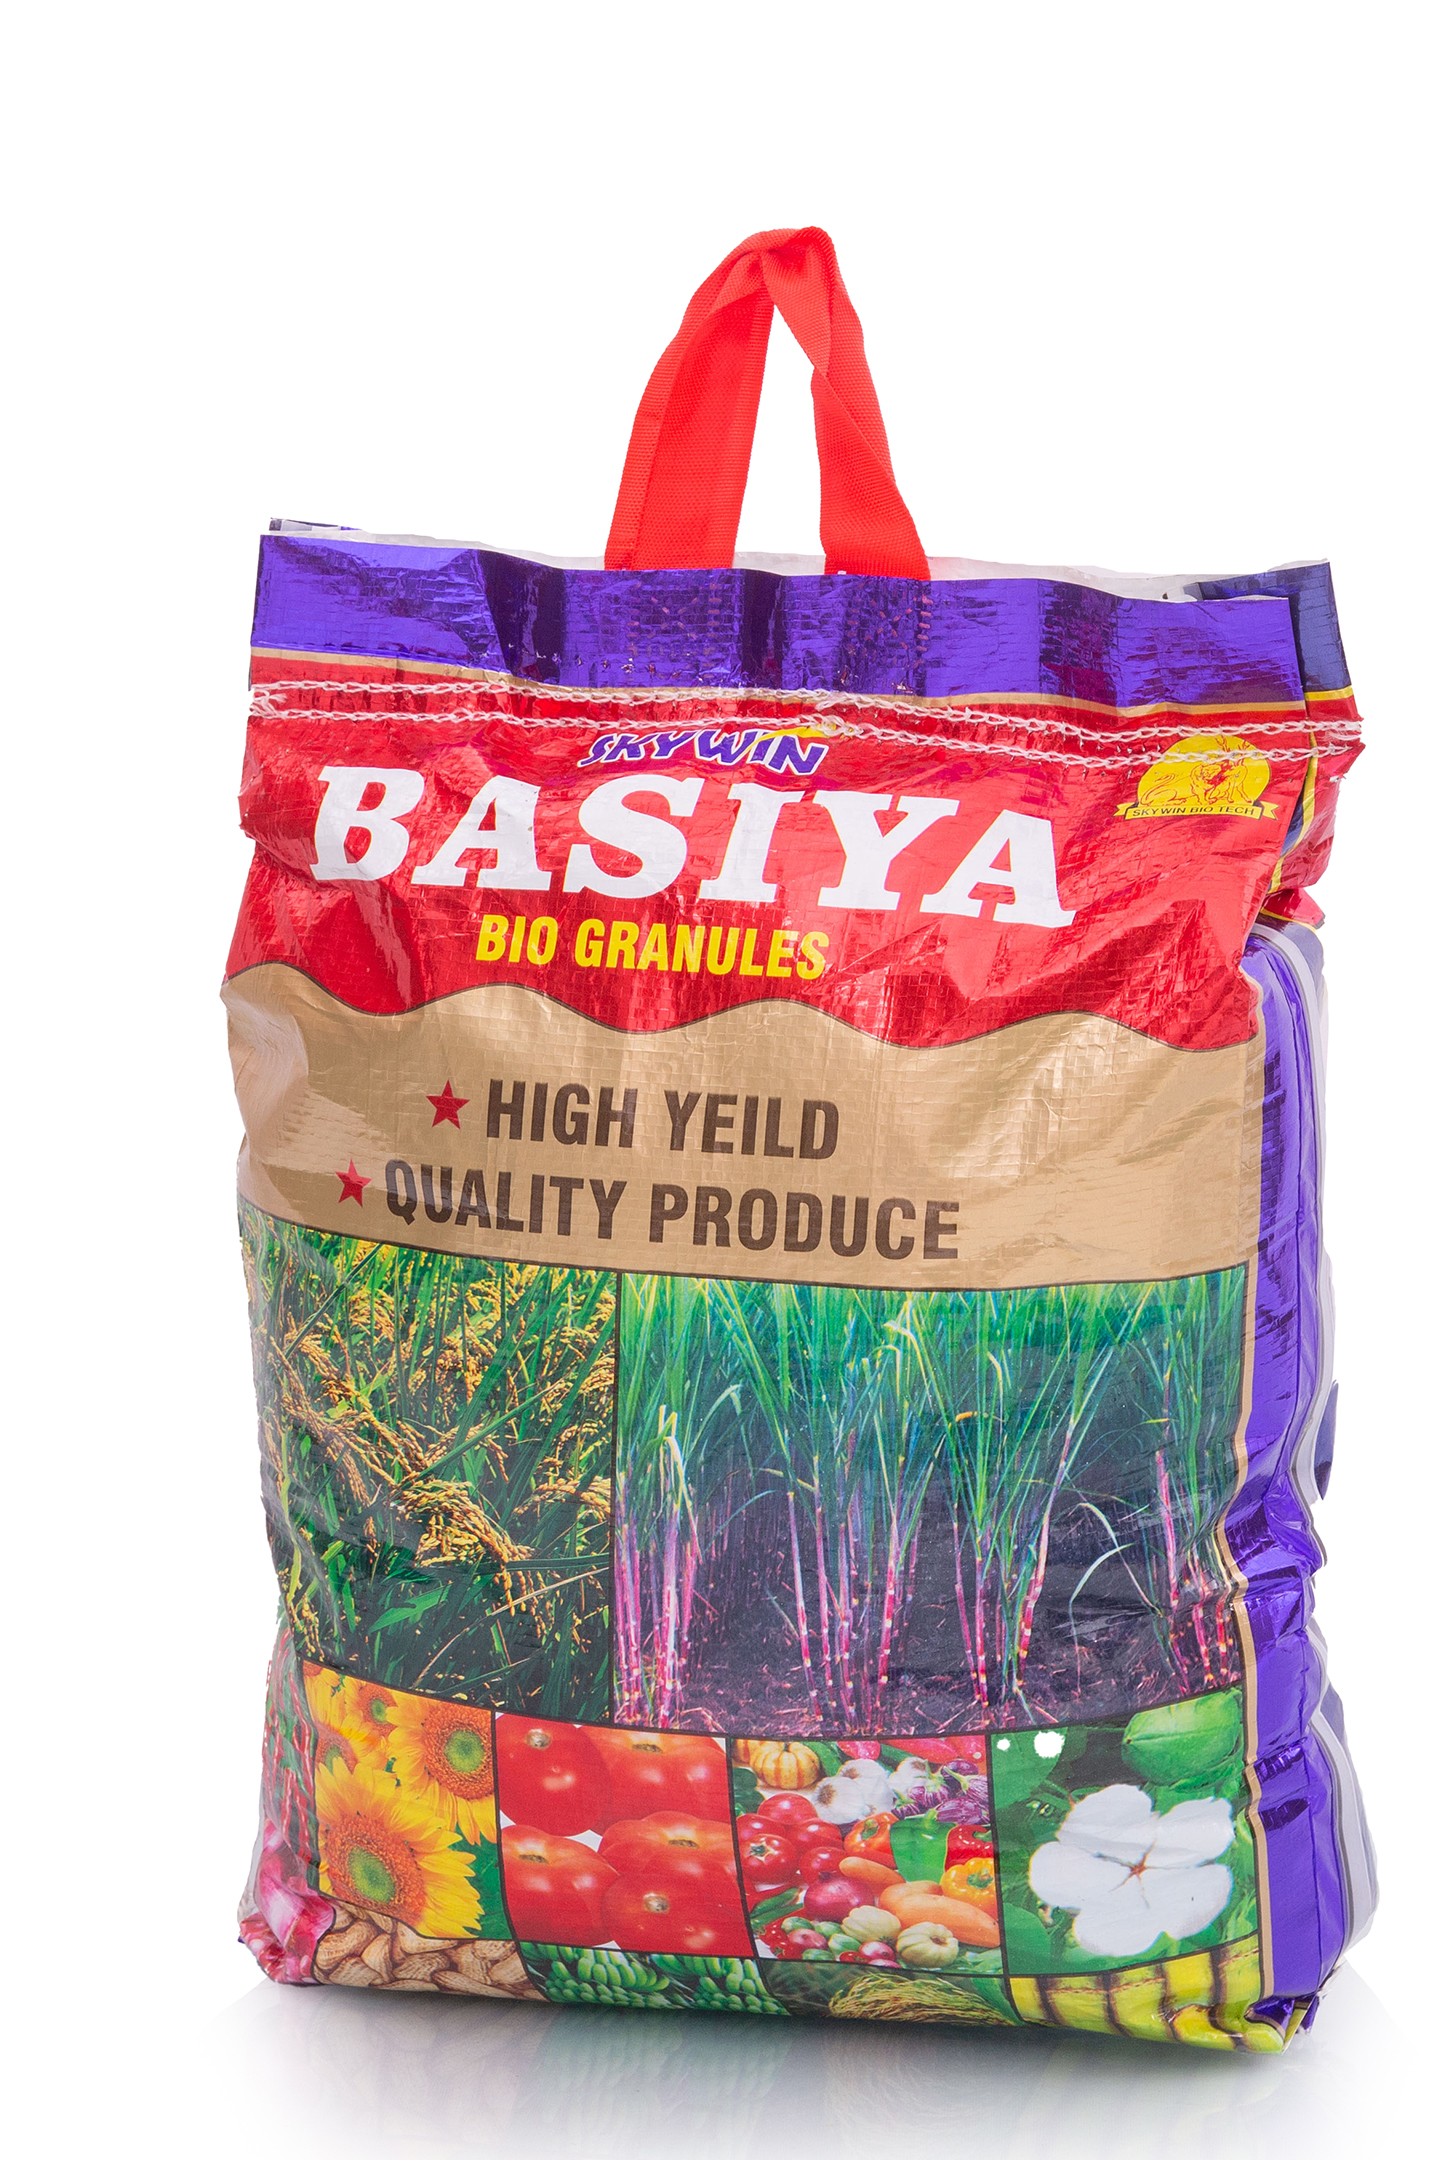 Skywin-Basiya-Bio-Granules-2